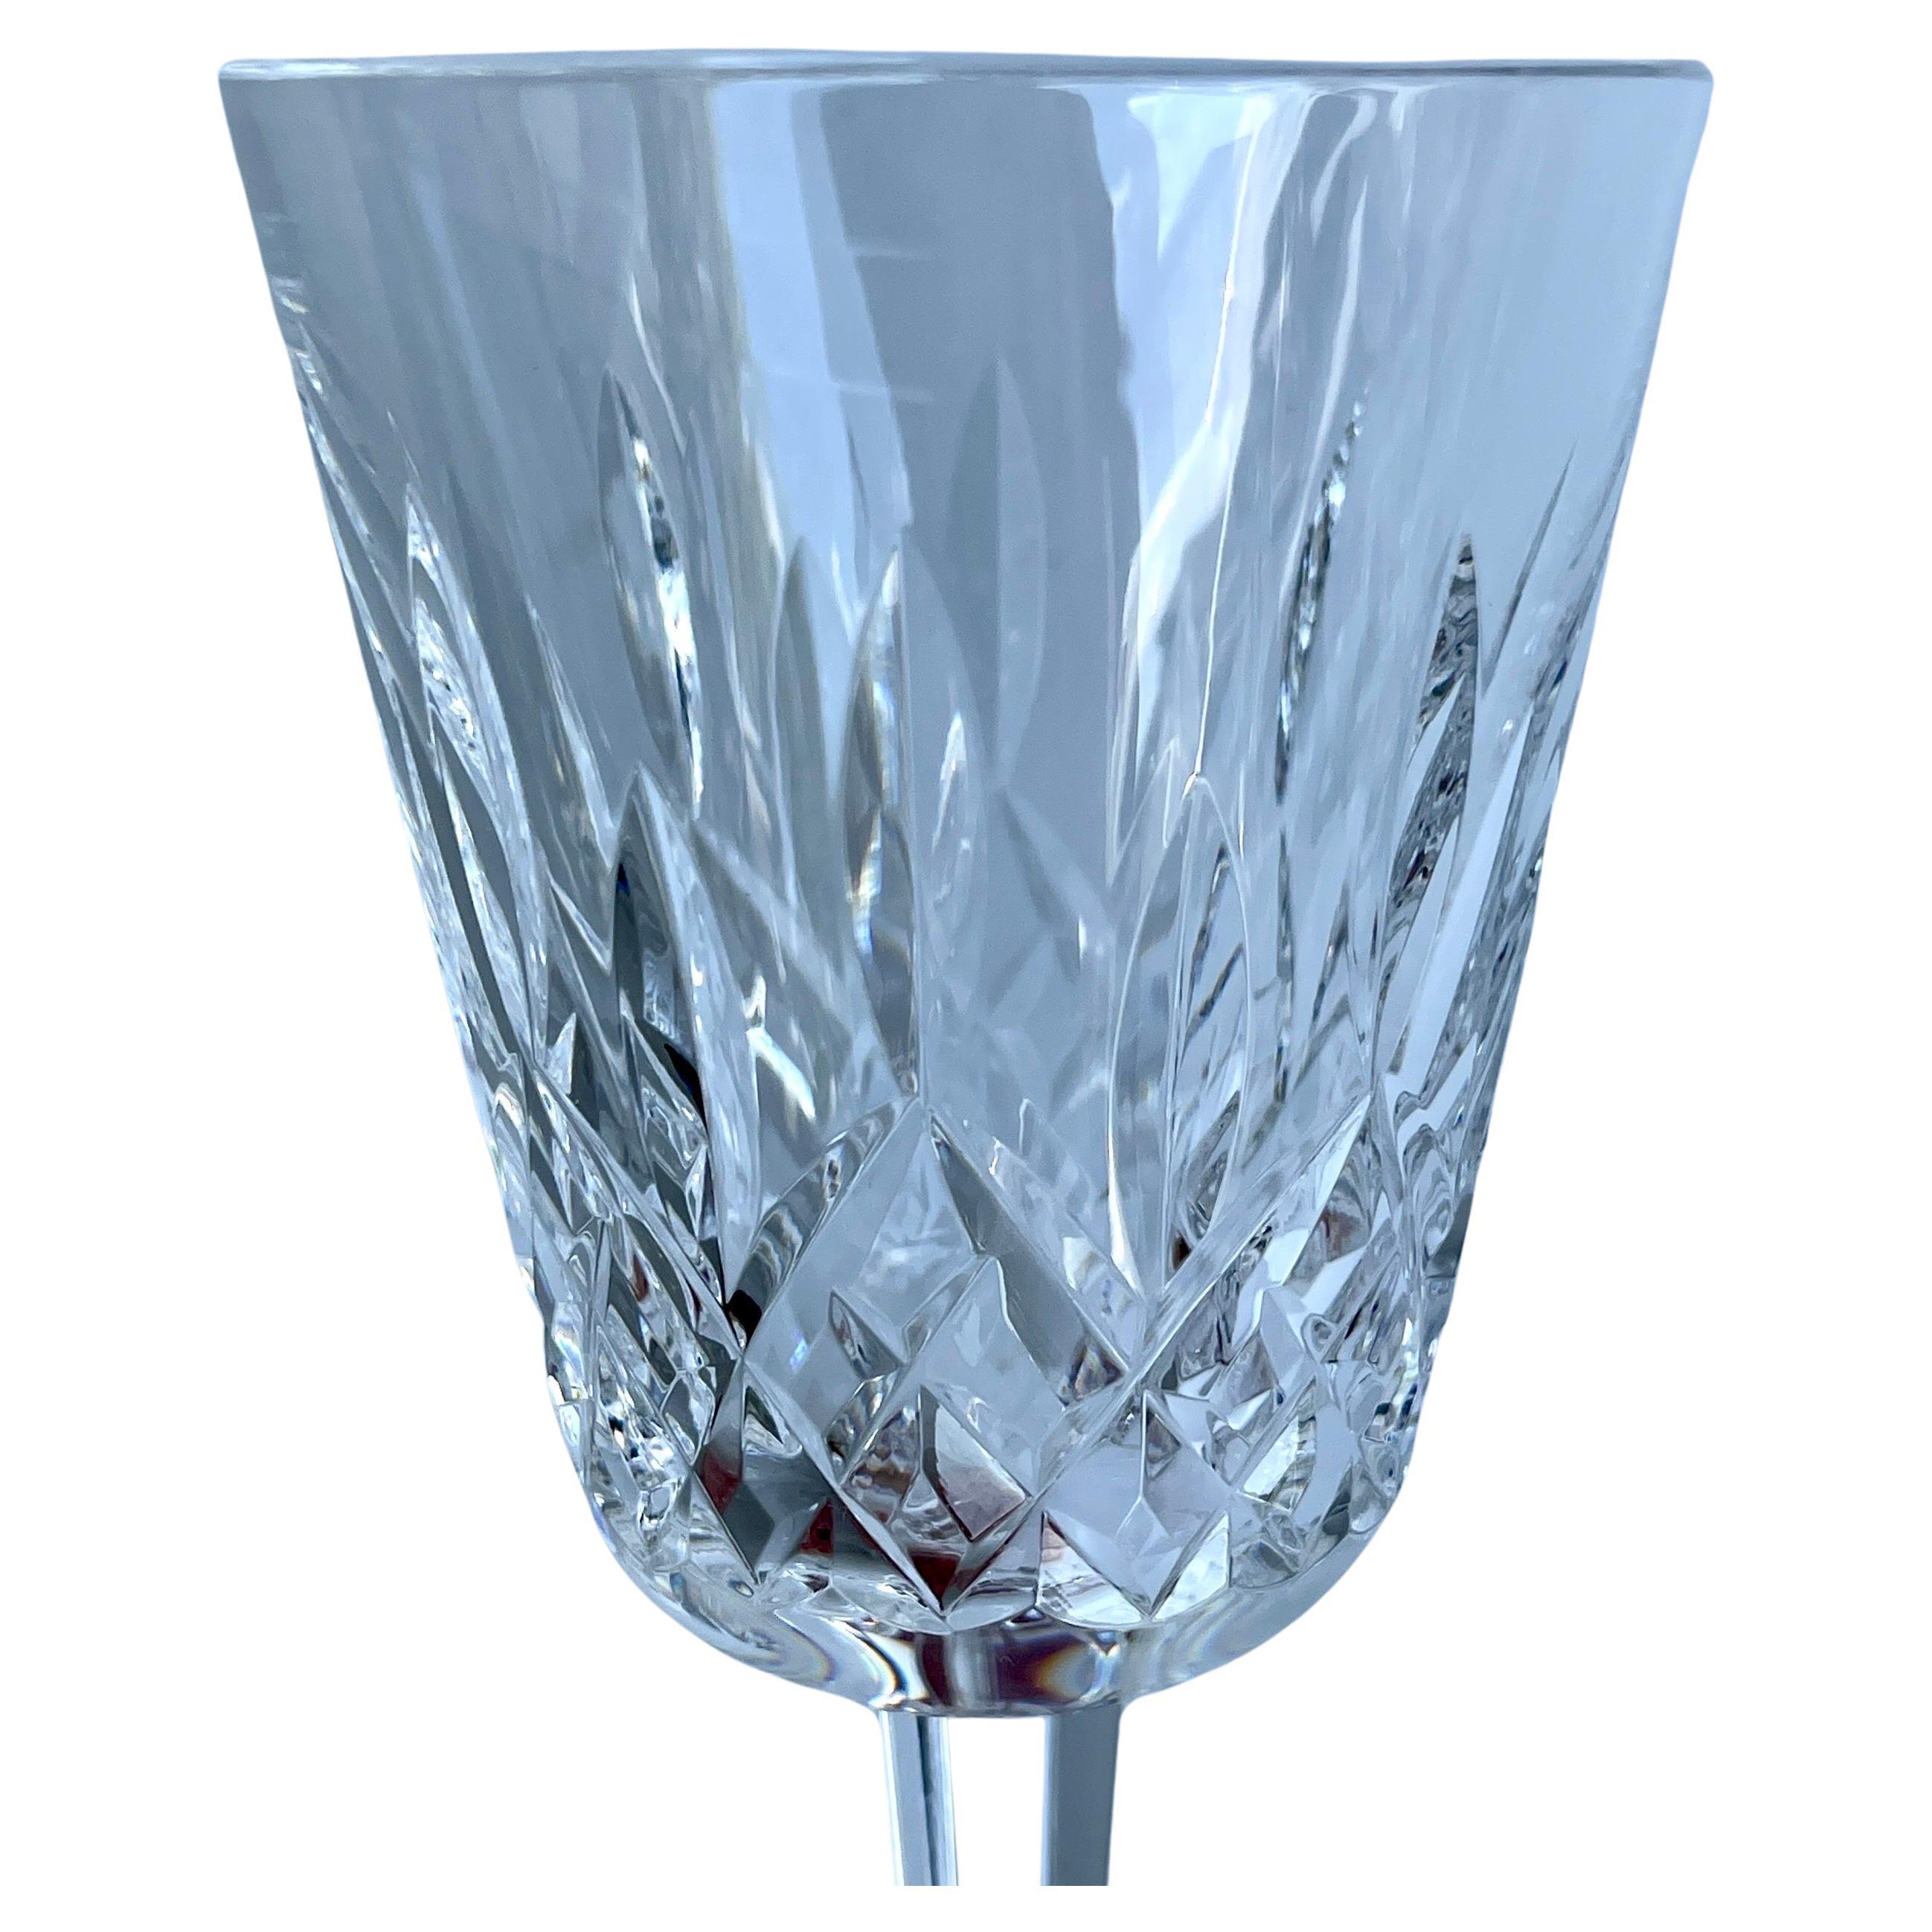 Vintage By Waterford Crystal Goblet Water or Wine Glasses, set of 14

Le célèbre motif Lismore a été créé en 1952 par Miroslav Havel, chef du design de Waterford, qui s'est inspiré du charme sauvage du château de Lismore, dans la campagne idyllique